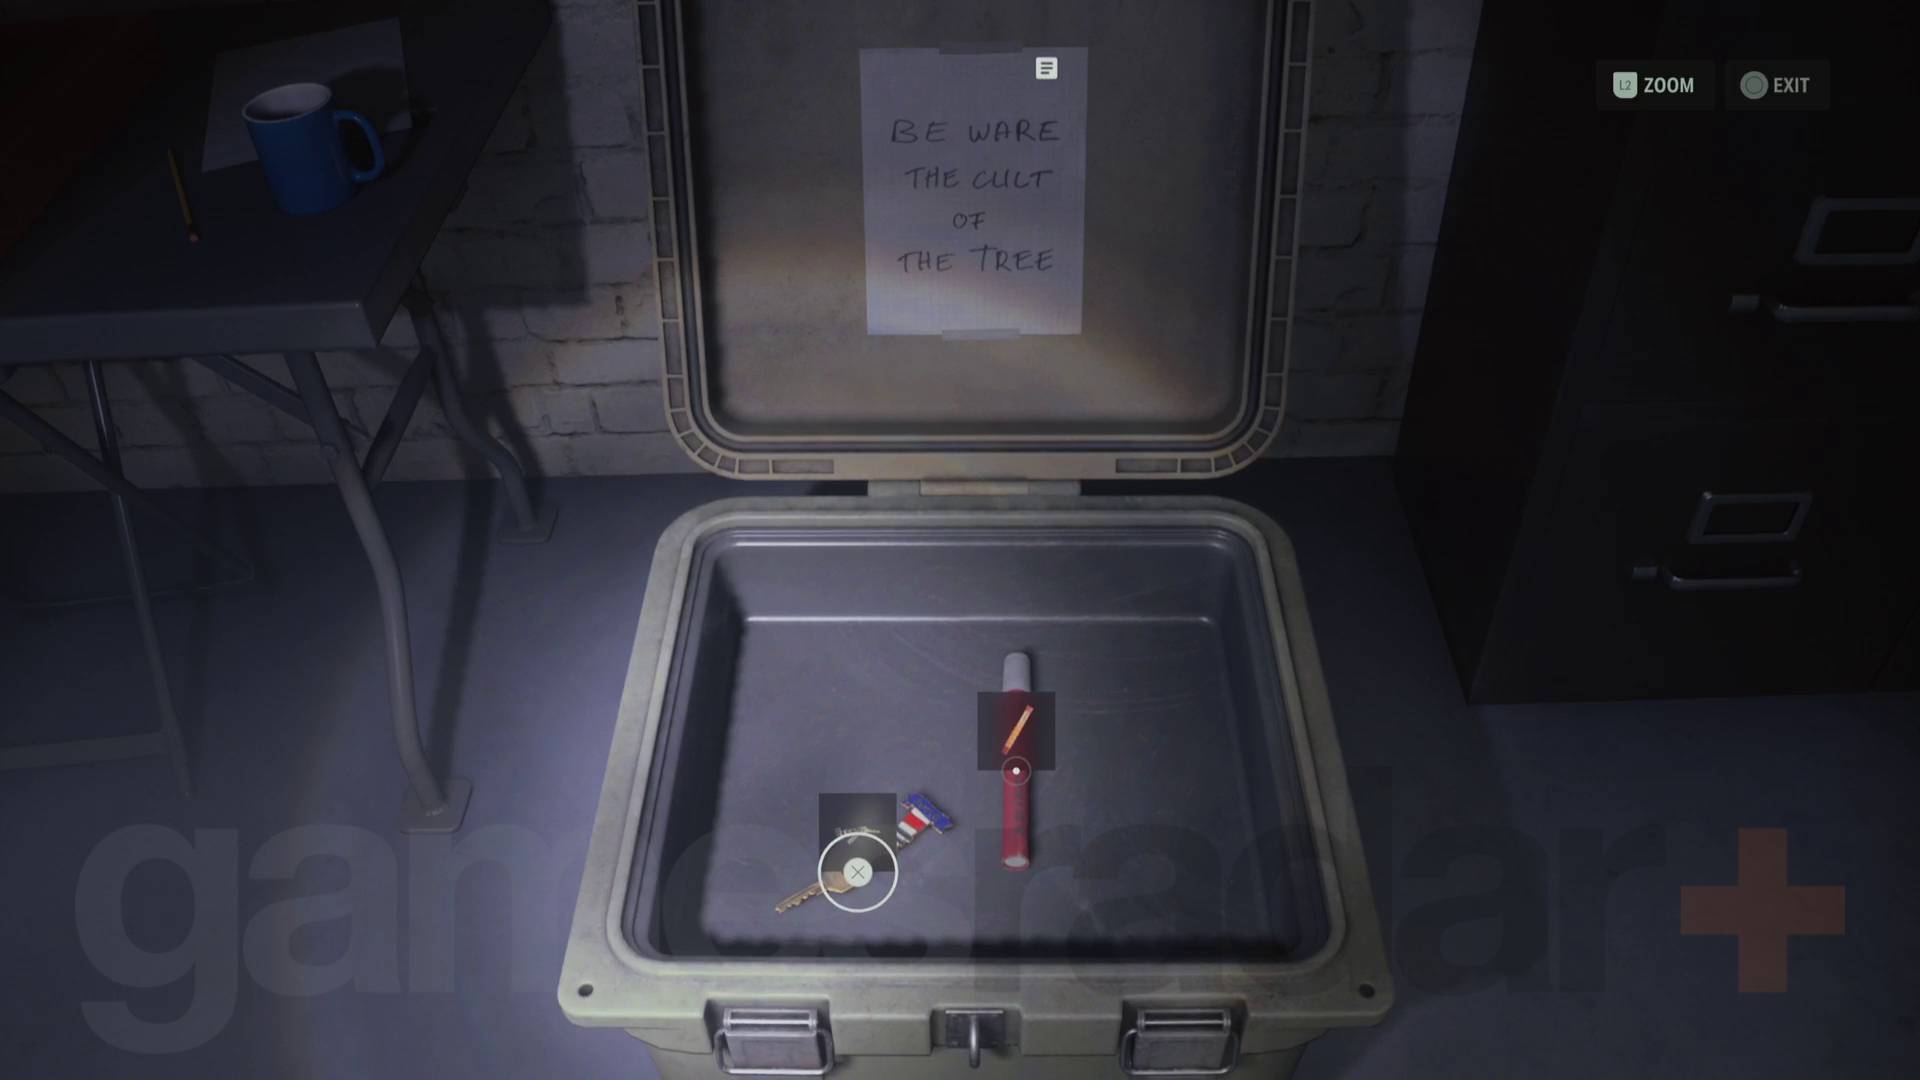 Klucz do latarni morskiej Alan Wake 2 w skrytce kultowej w pomieszczeniu z dowodami